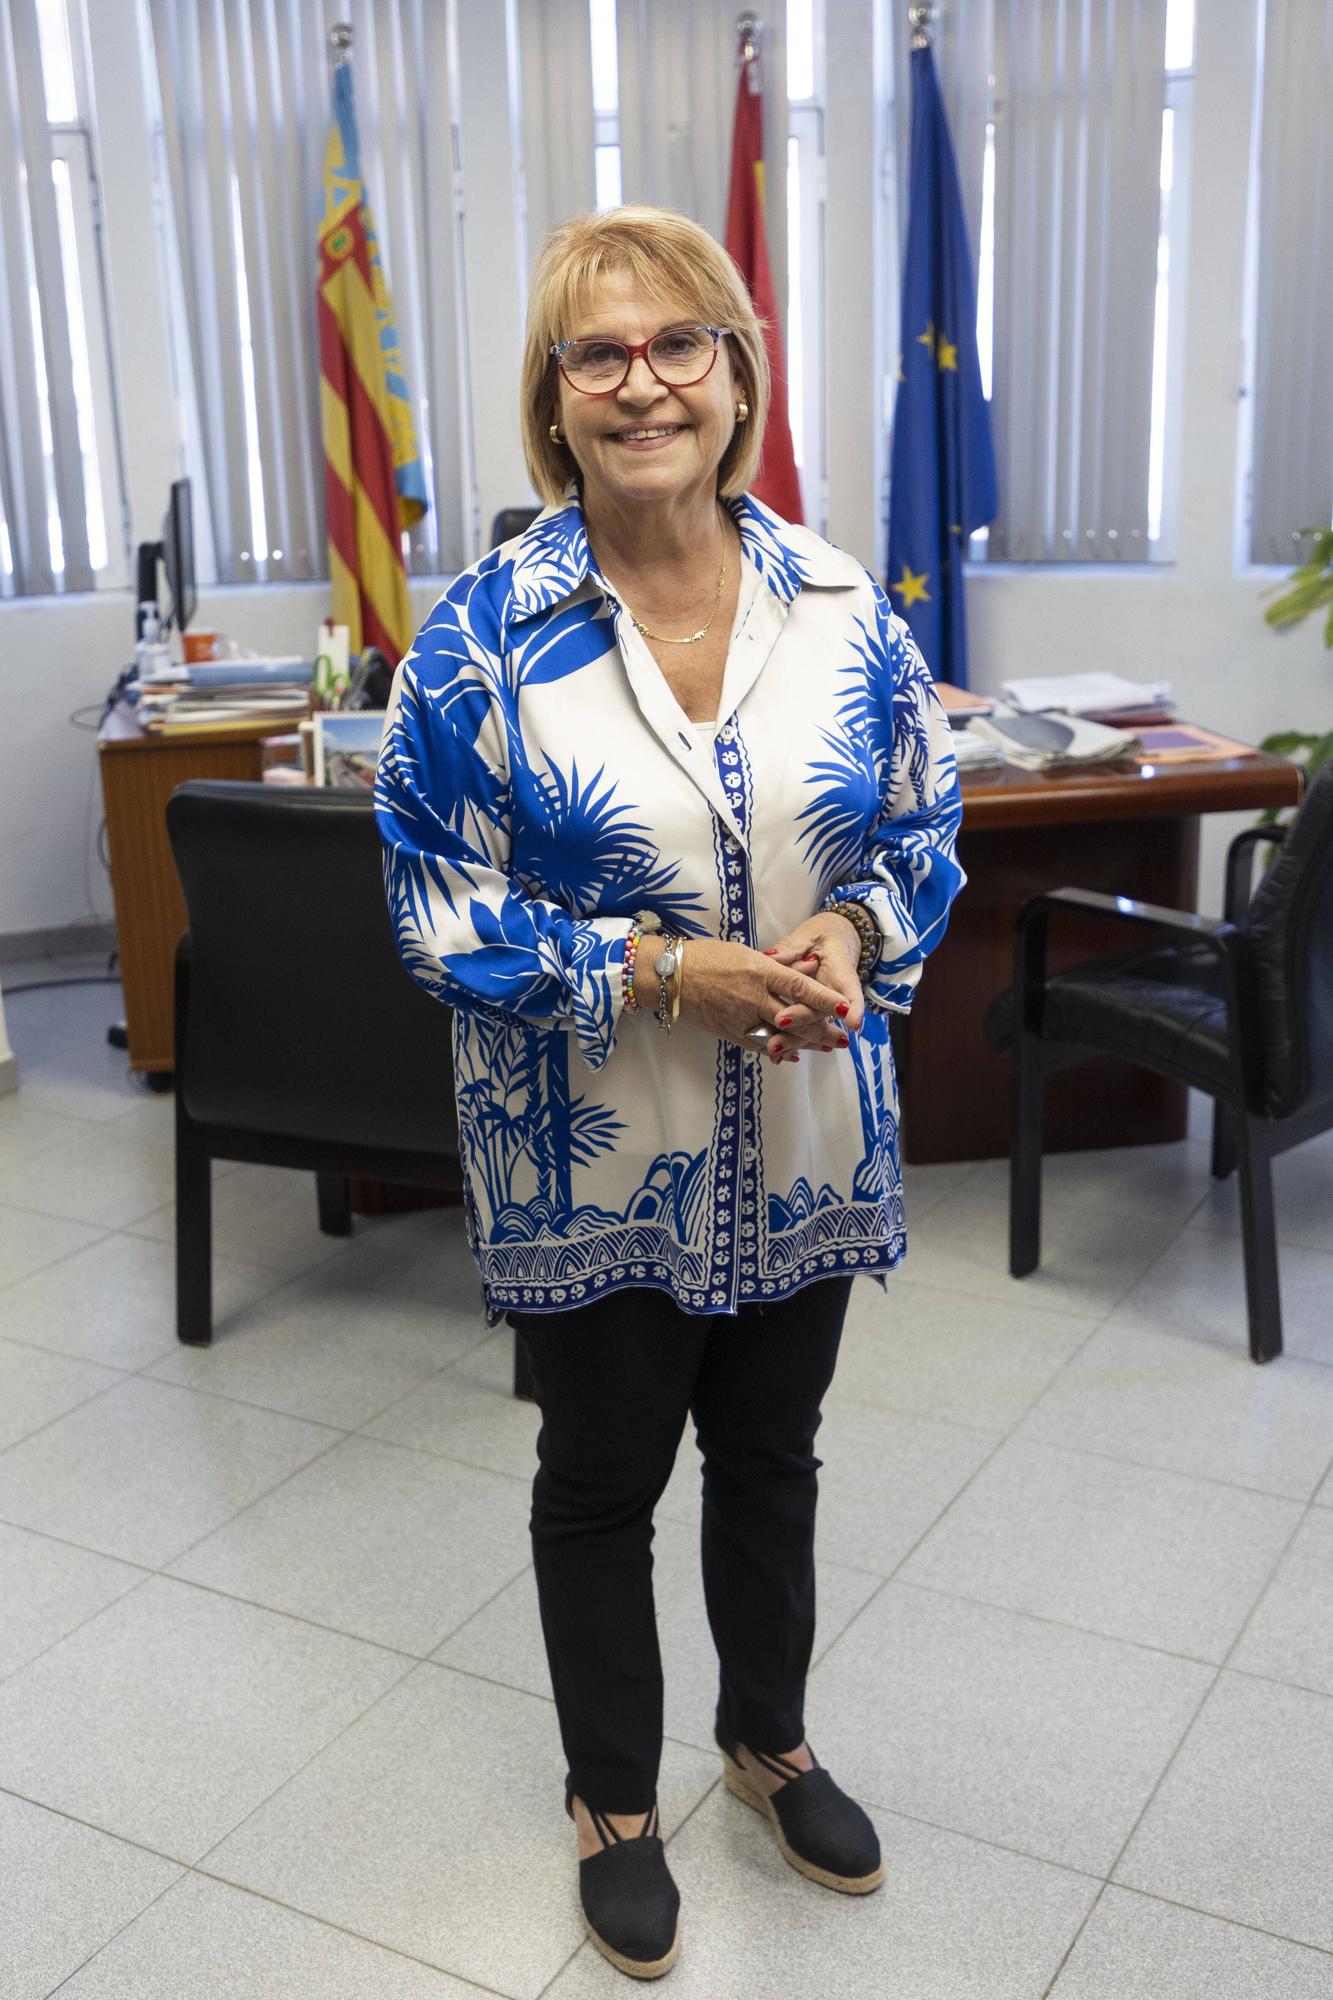 Entrevista a Conxa GaArcia, alcaldesa de Picassent.